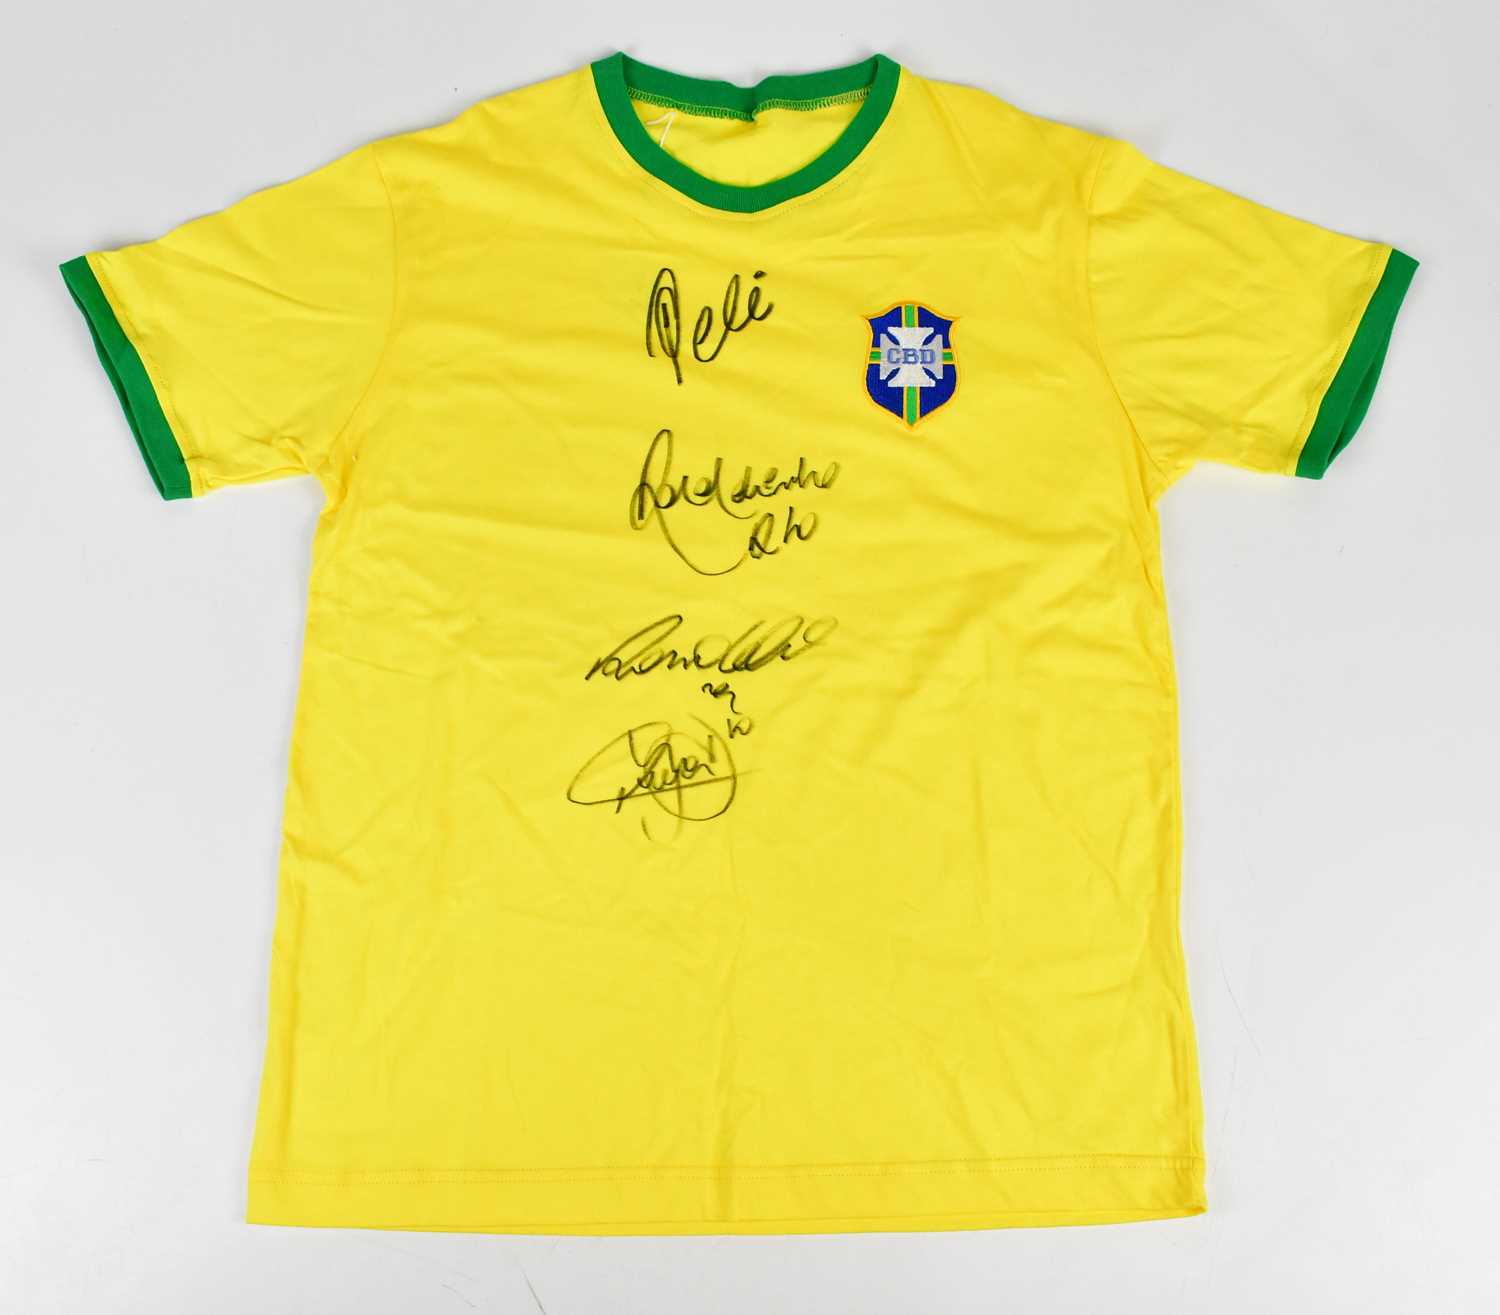 BRAZIL; a 1970s retro style football shirt, signed to the front by Pelé, Ronaldinho, Ronaldo,